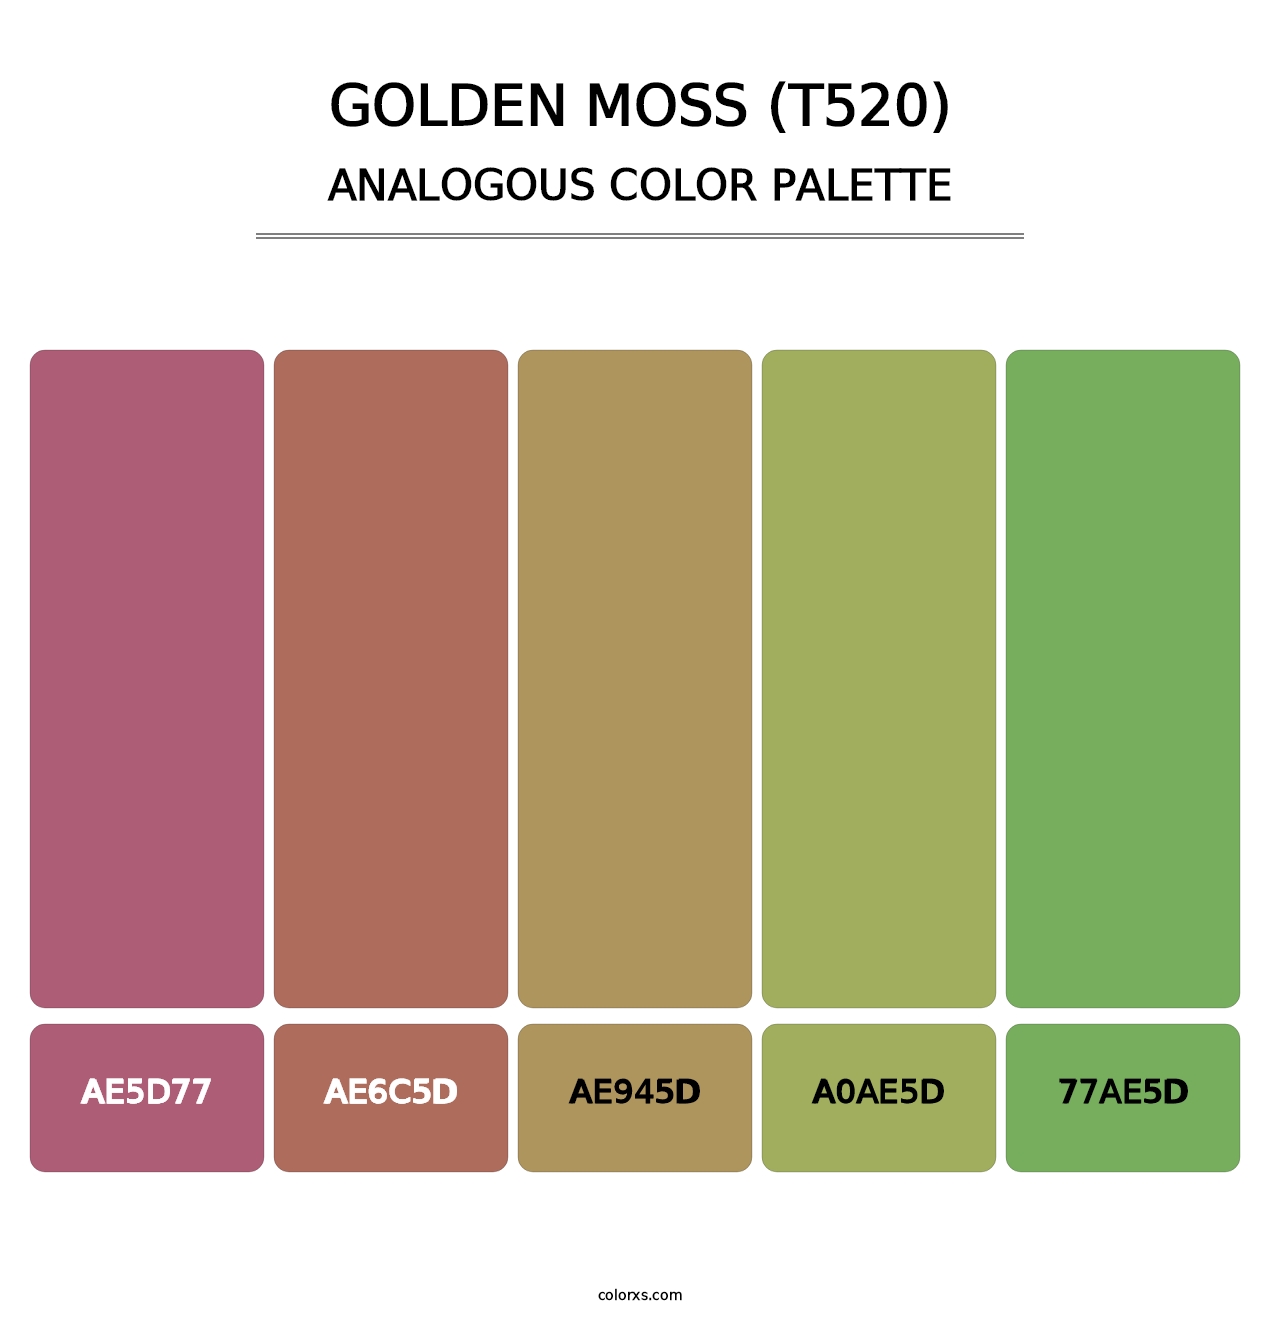 Golden Moss (T520) - Analogous Color Palette